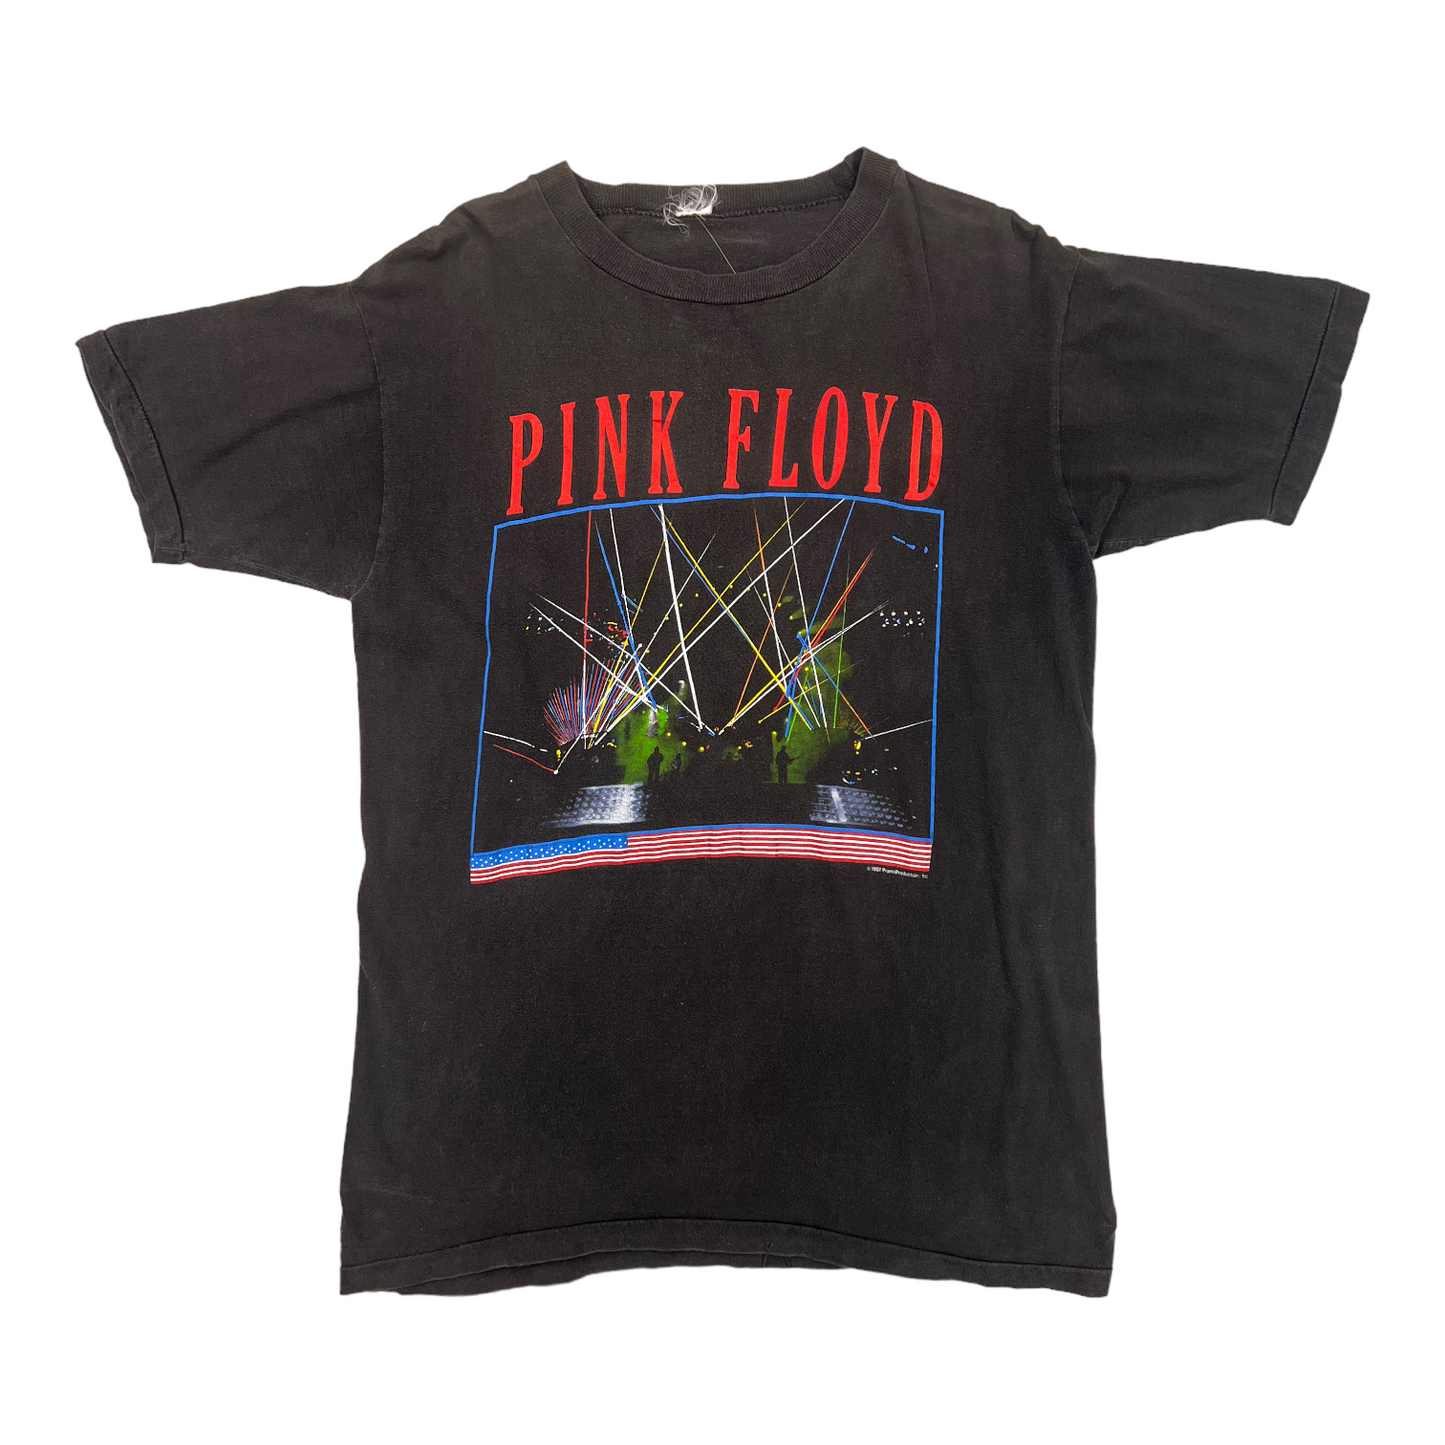 1987 Pink Floyd vintage band tee